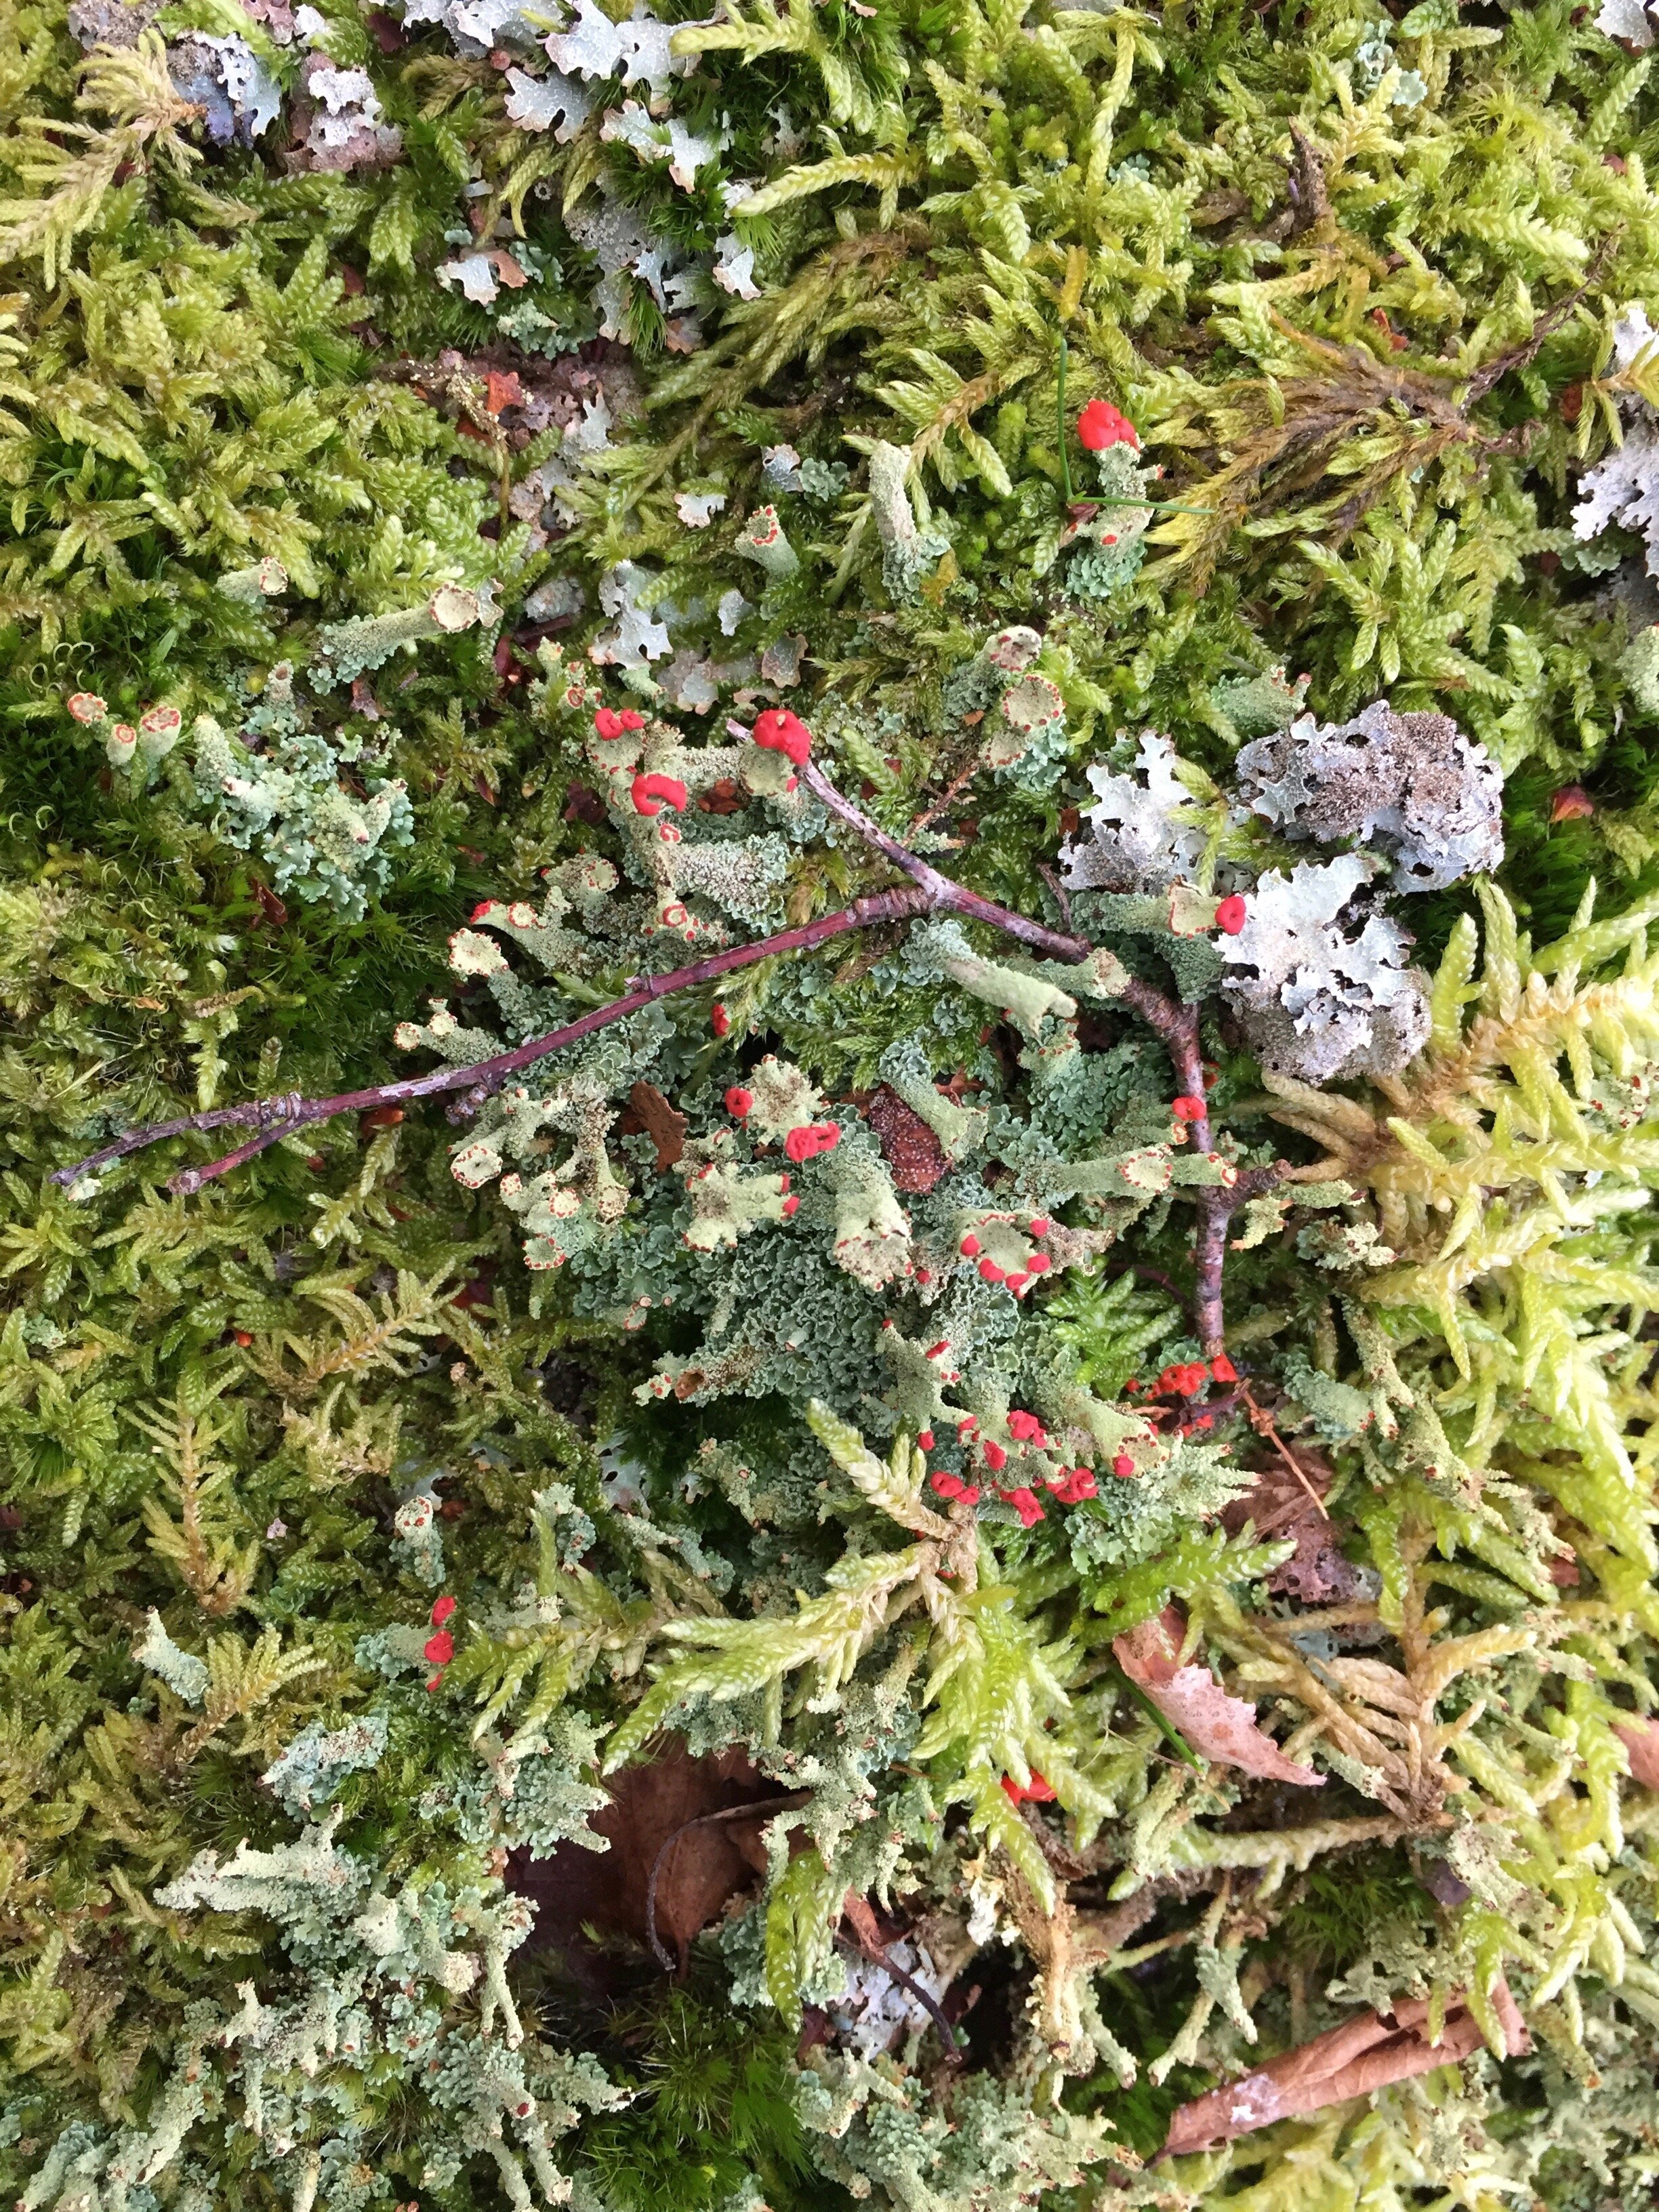  Red-flowering pixie cup lichen. 